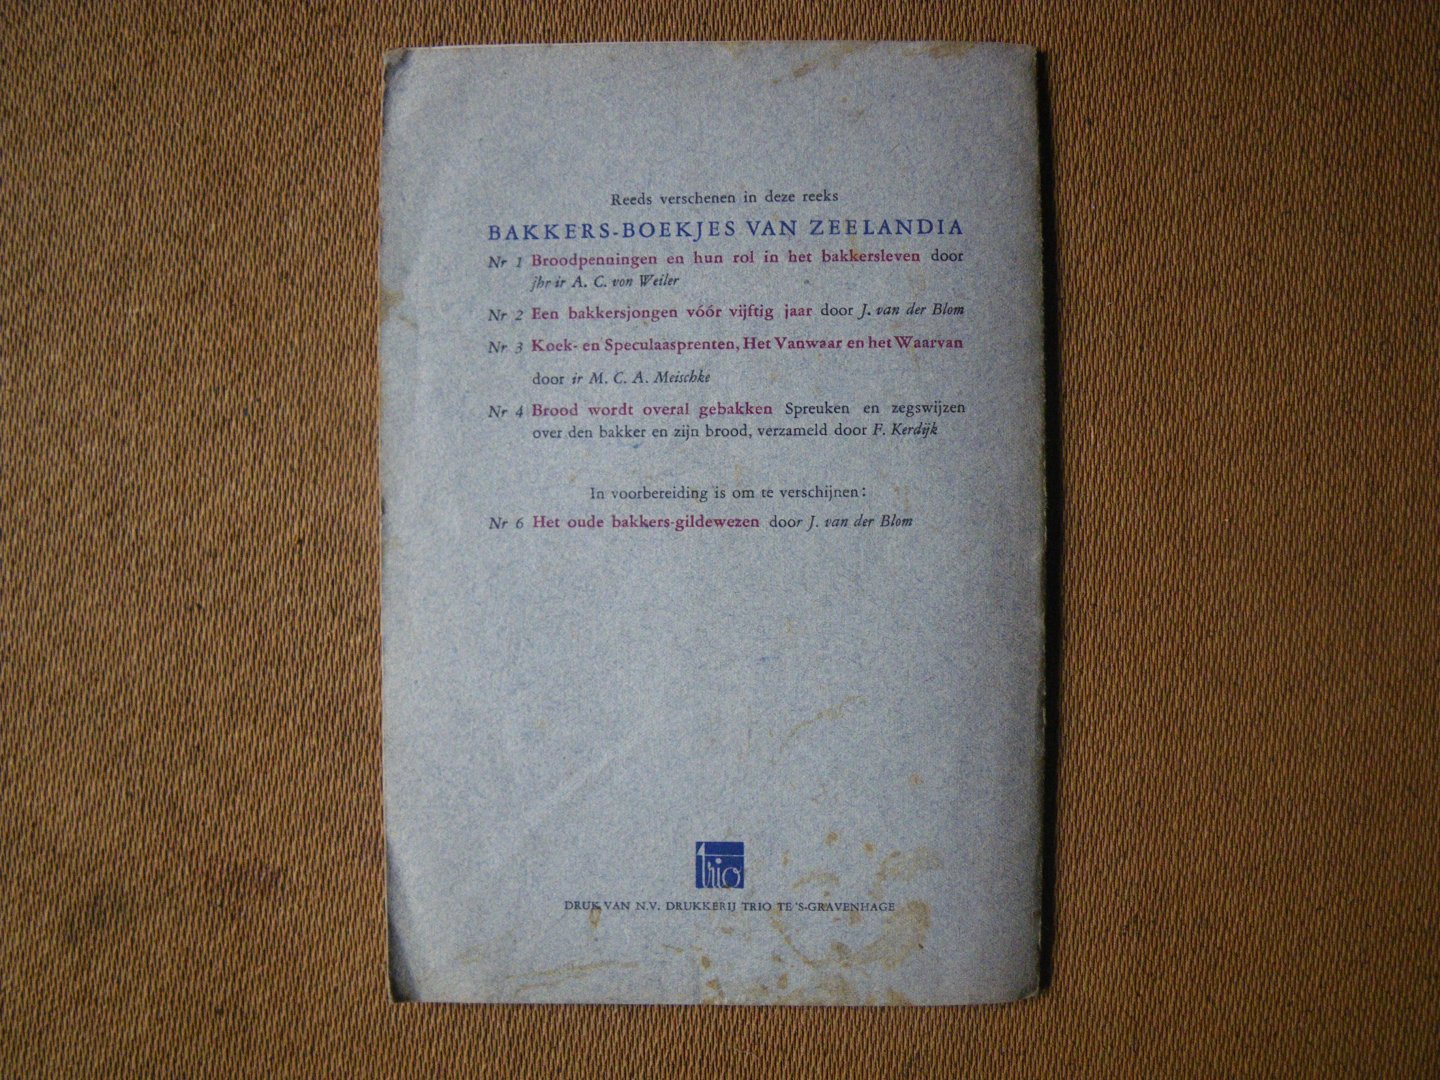 Meischke M.C.A. Ir - Koek- en Speculaasprenten het prentenboek van ons volksleven - de bakkersboekjes van Zeelandia no.5-